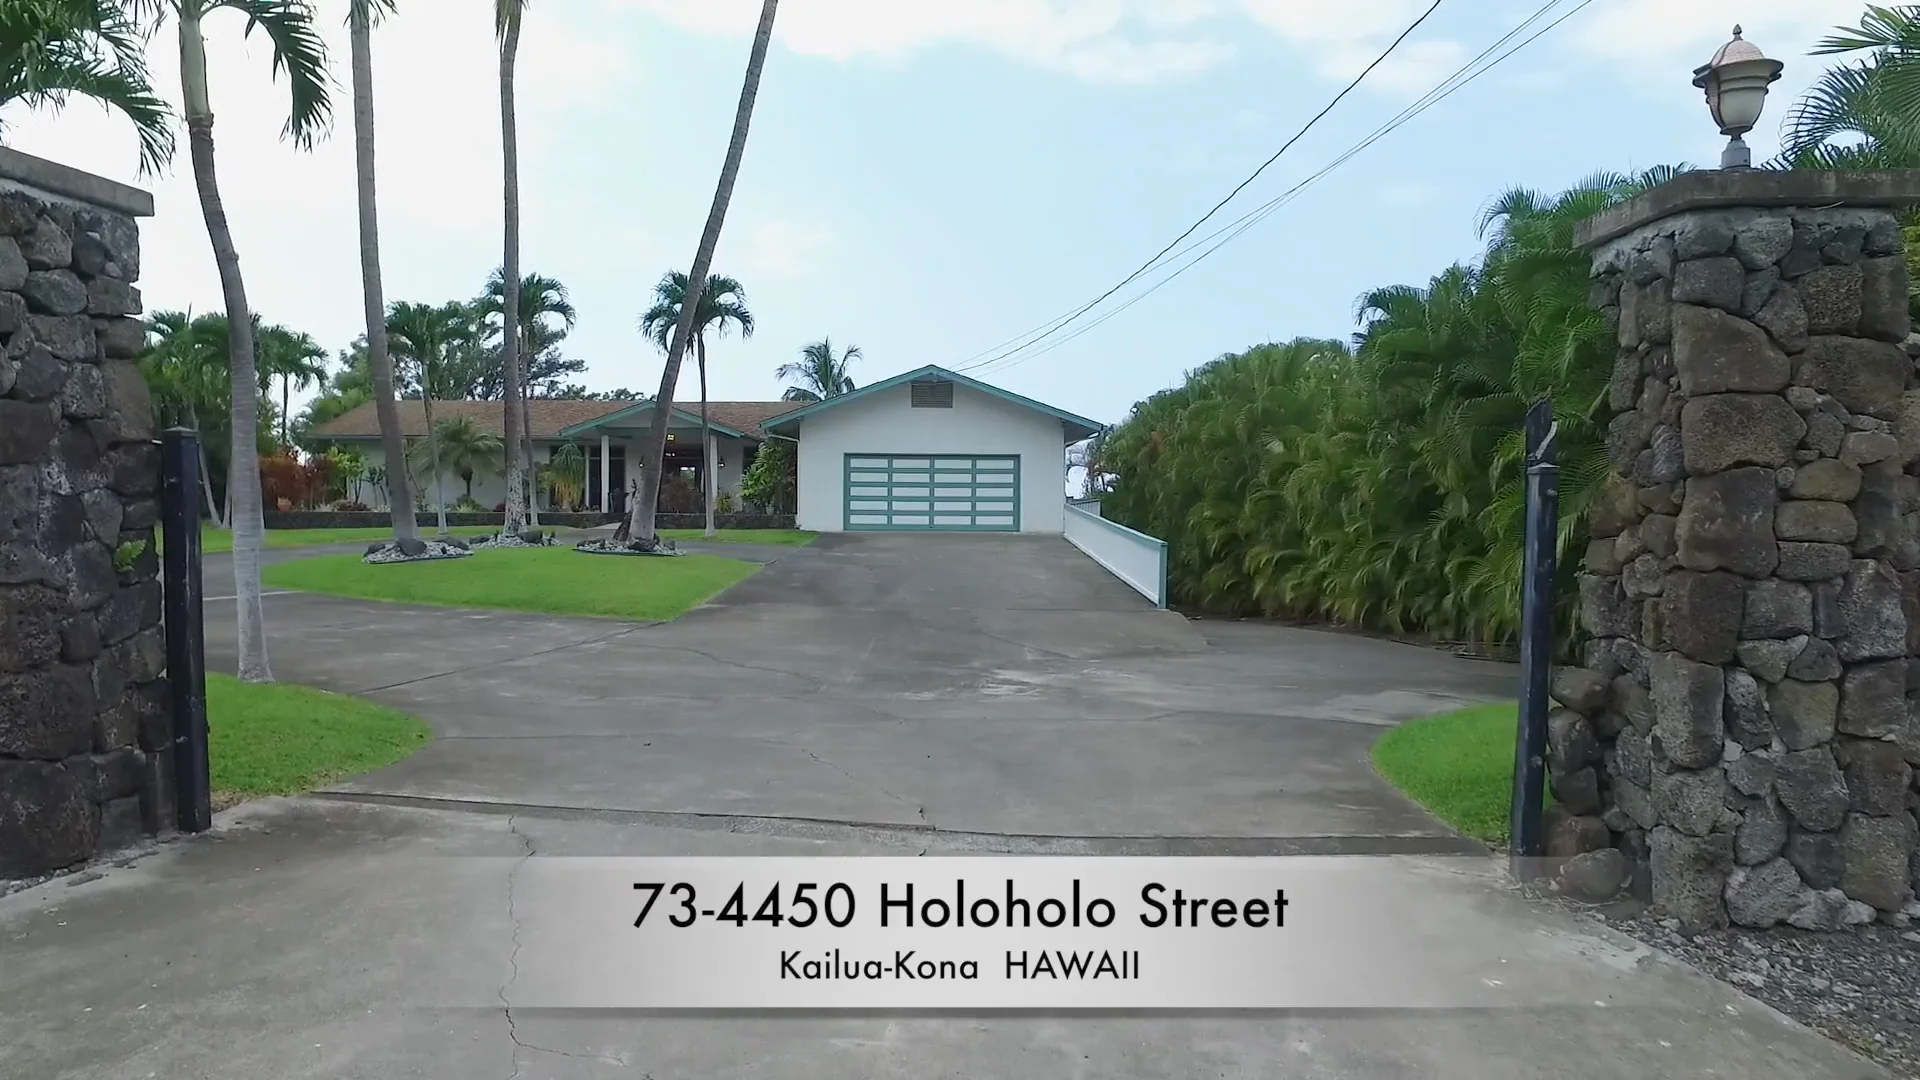 73-4450 Holoholo Street ~ Kailua-Kona HAWAII